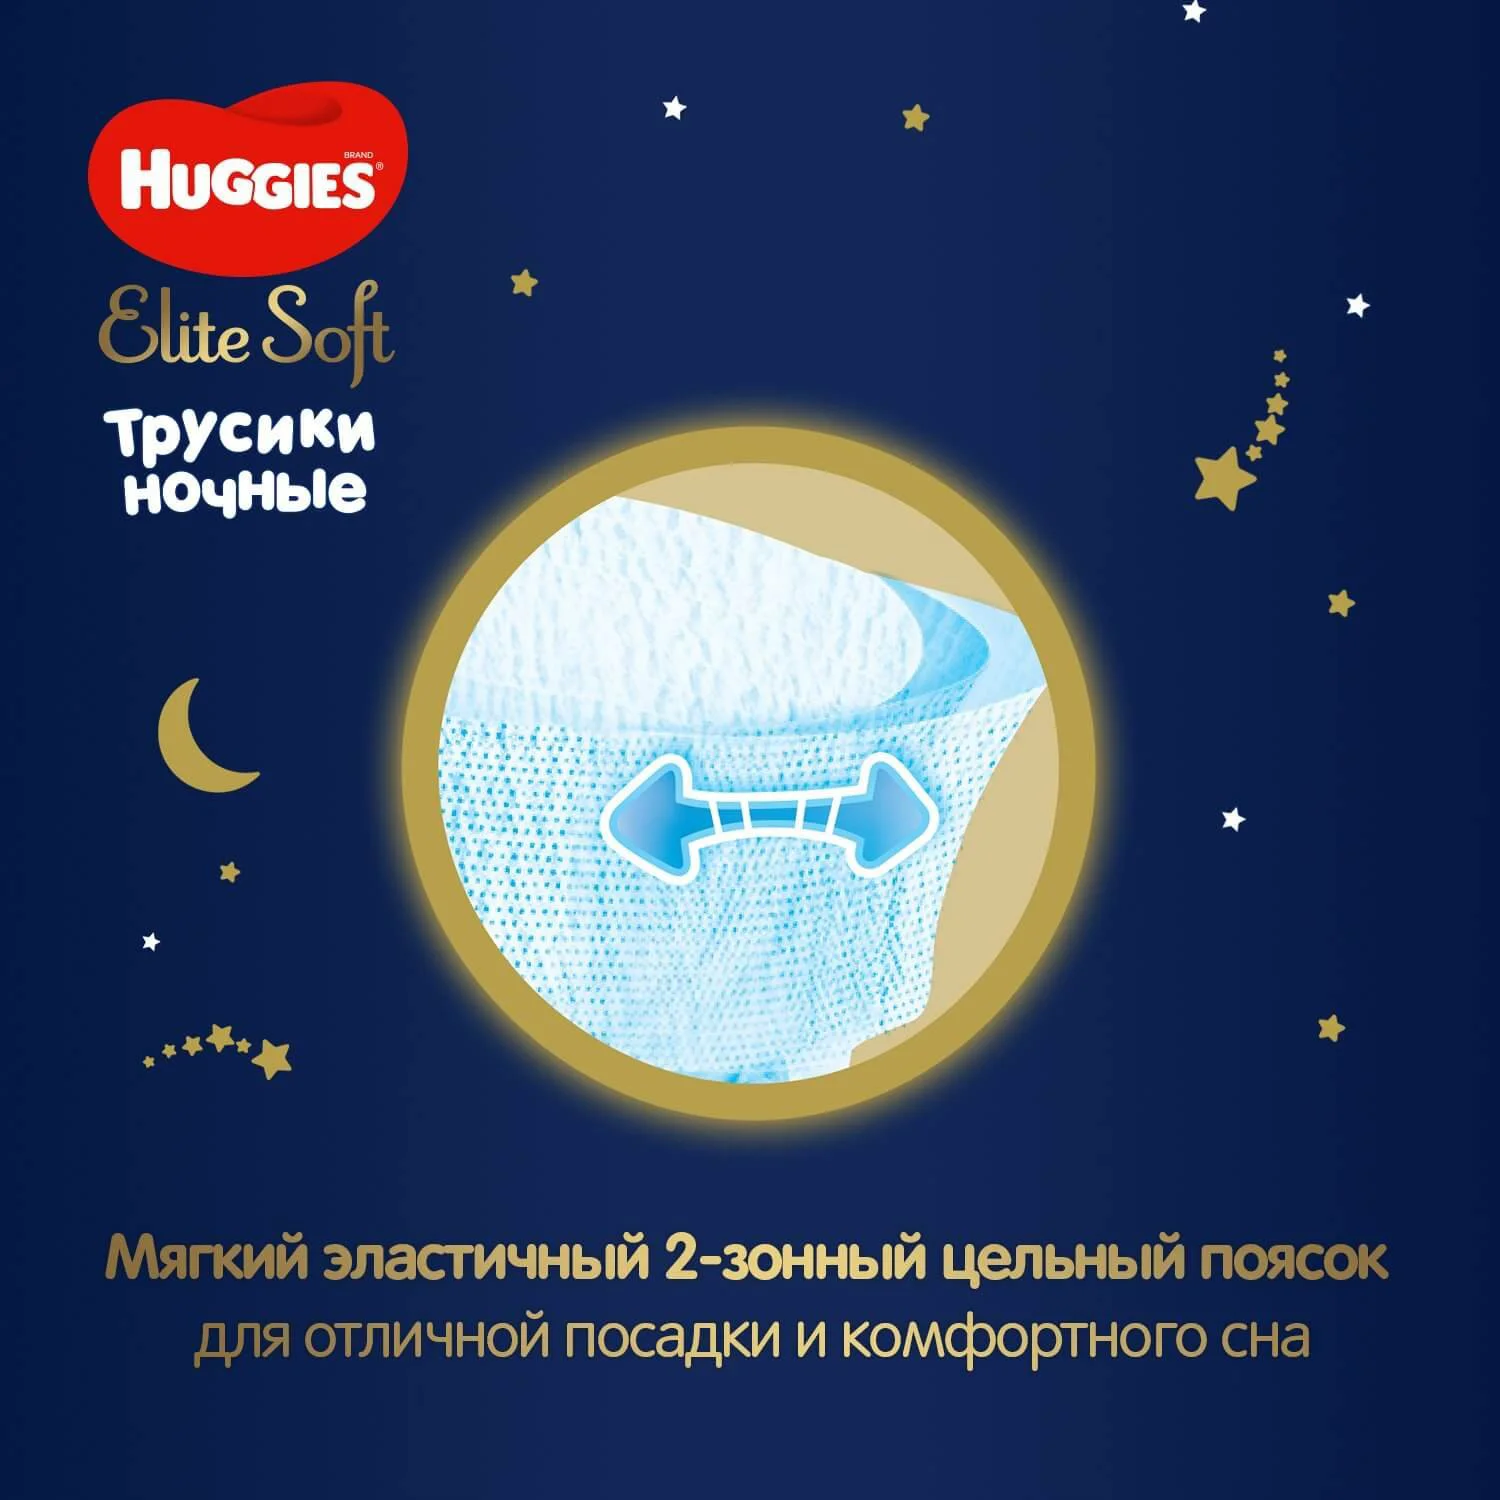 Ночные трусики Huggies Elite Soft 4 (9-14 кг), 19 шт.